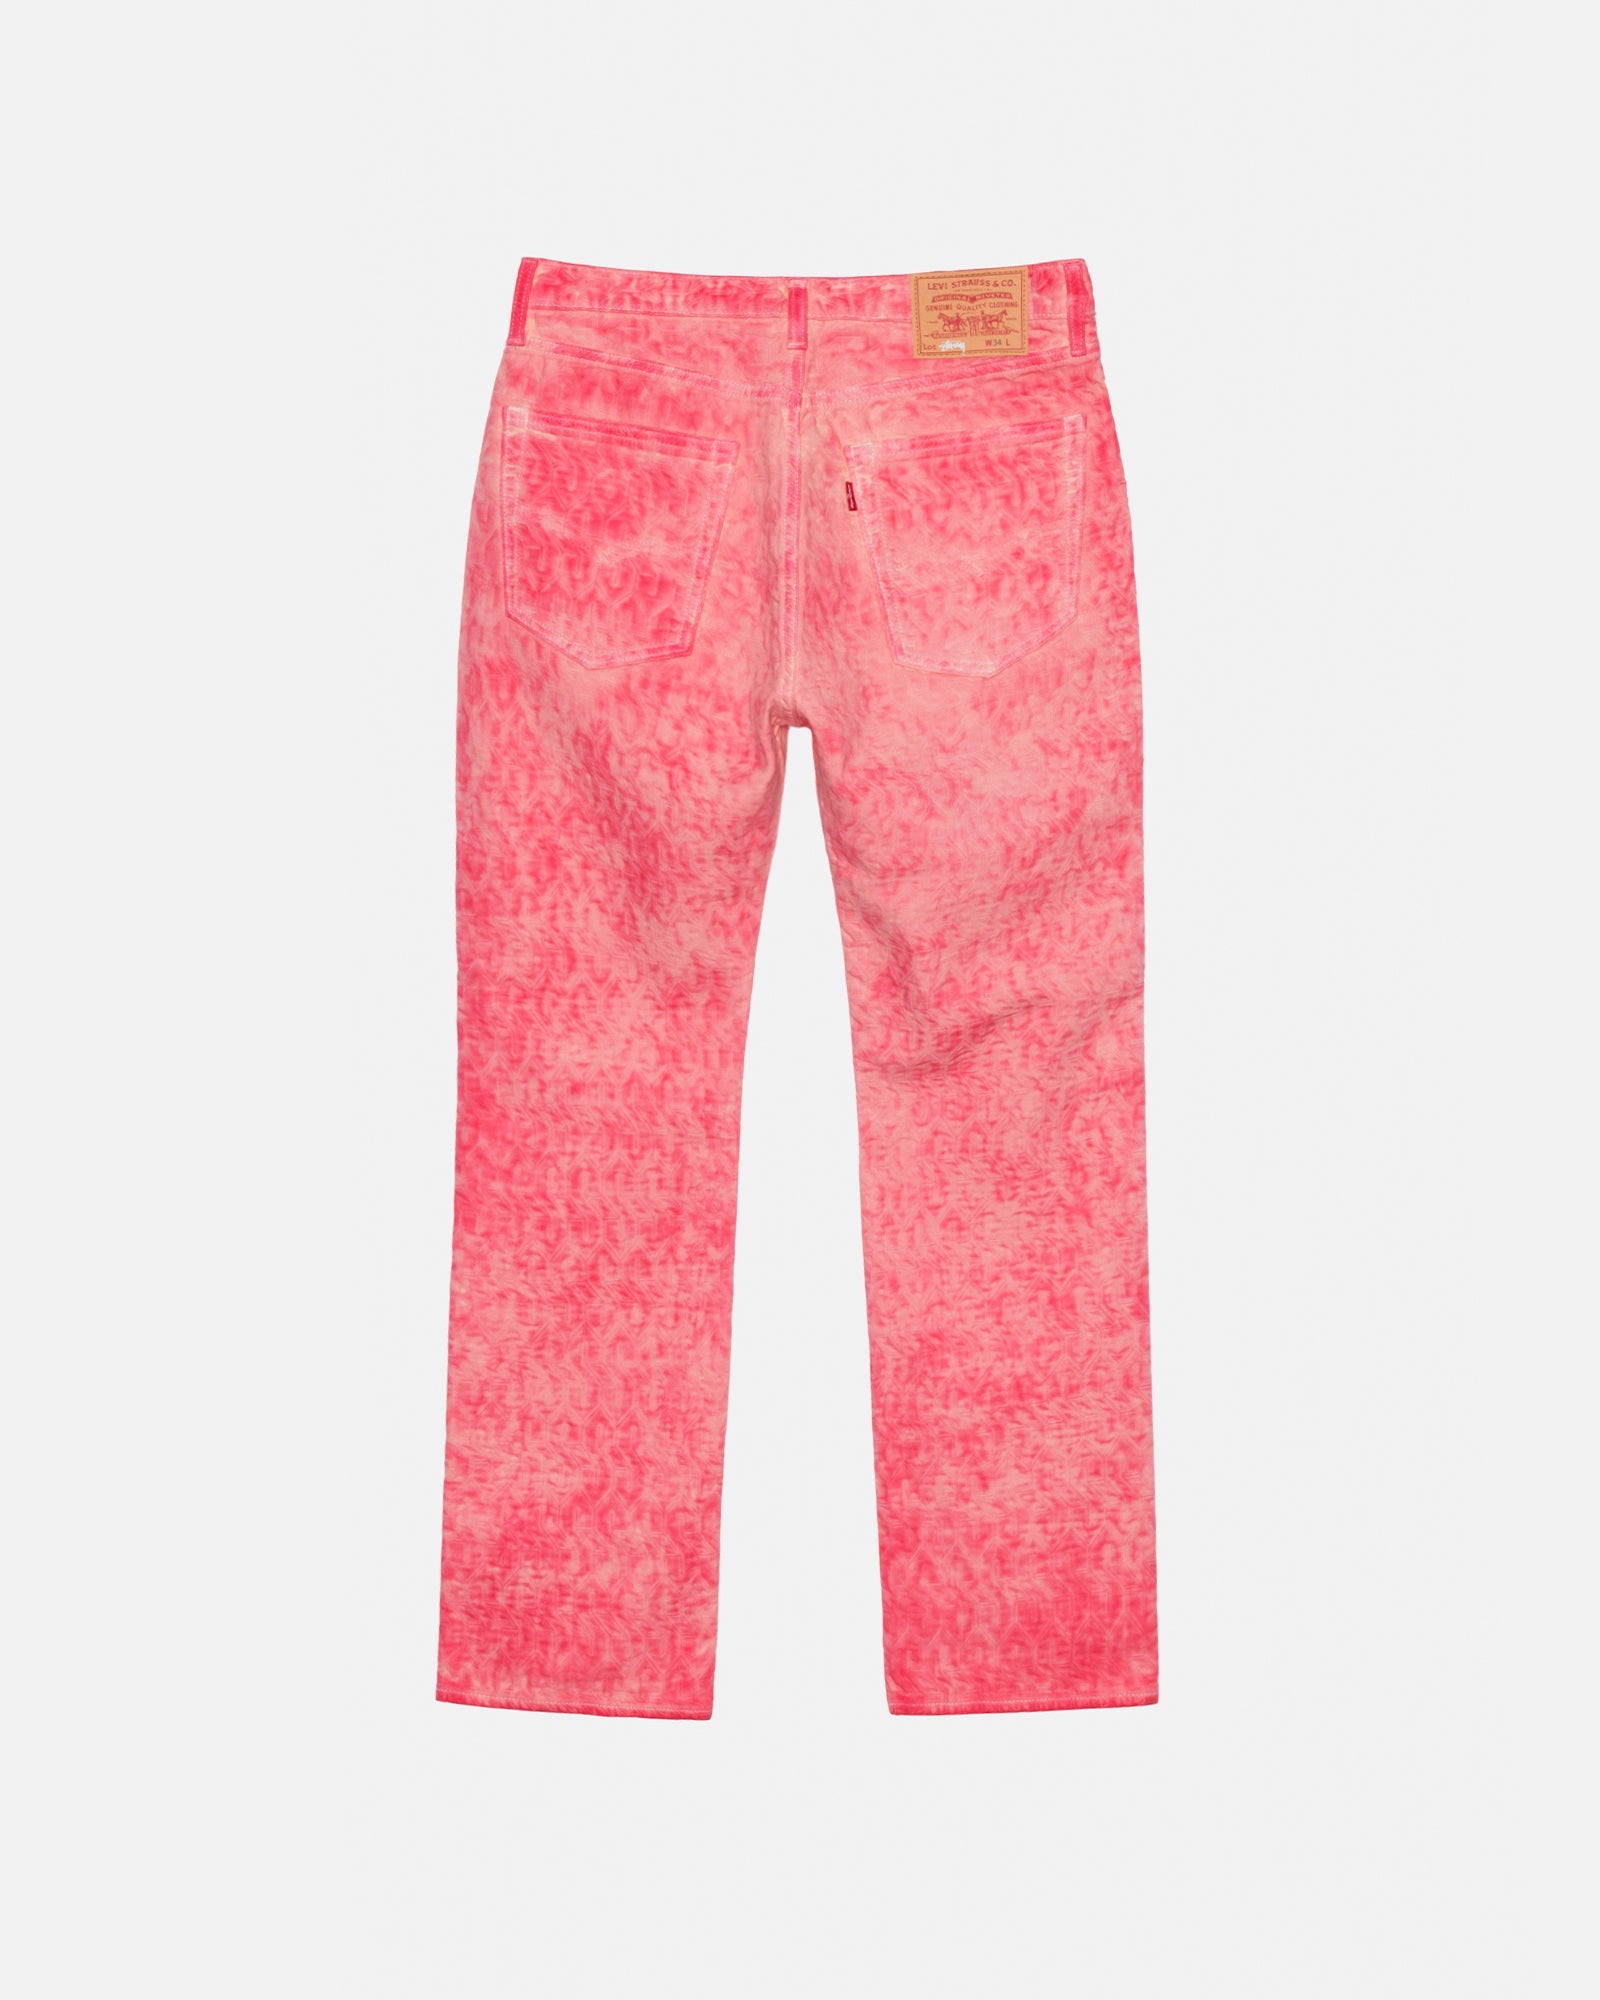 デニム/ジーンズStussy x Levi's Dyed Jacquard Jeans Pink